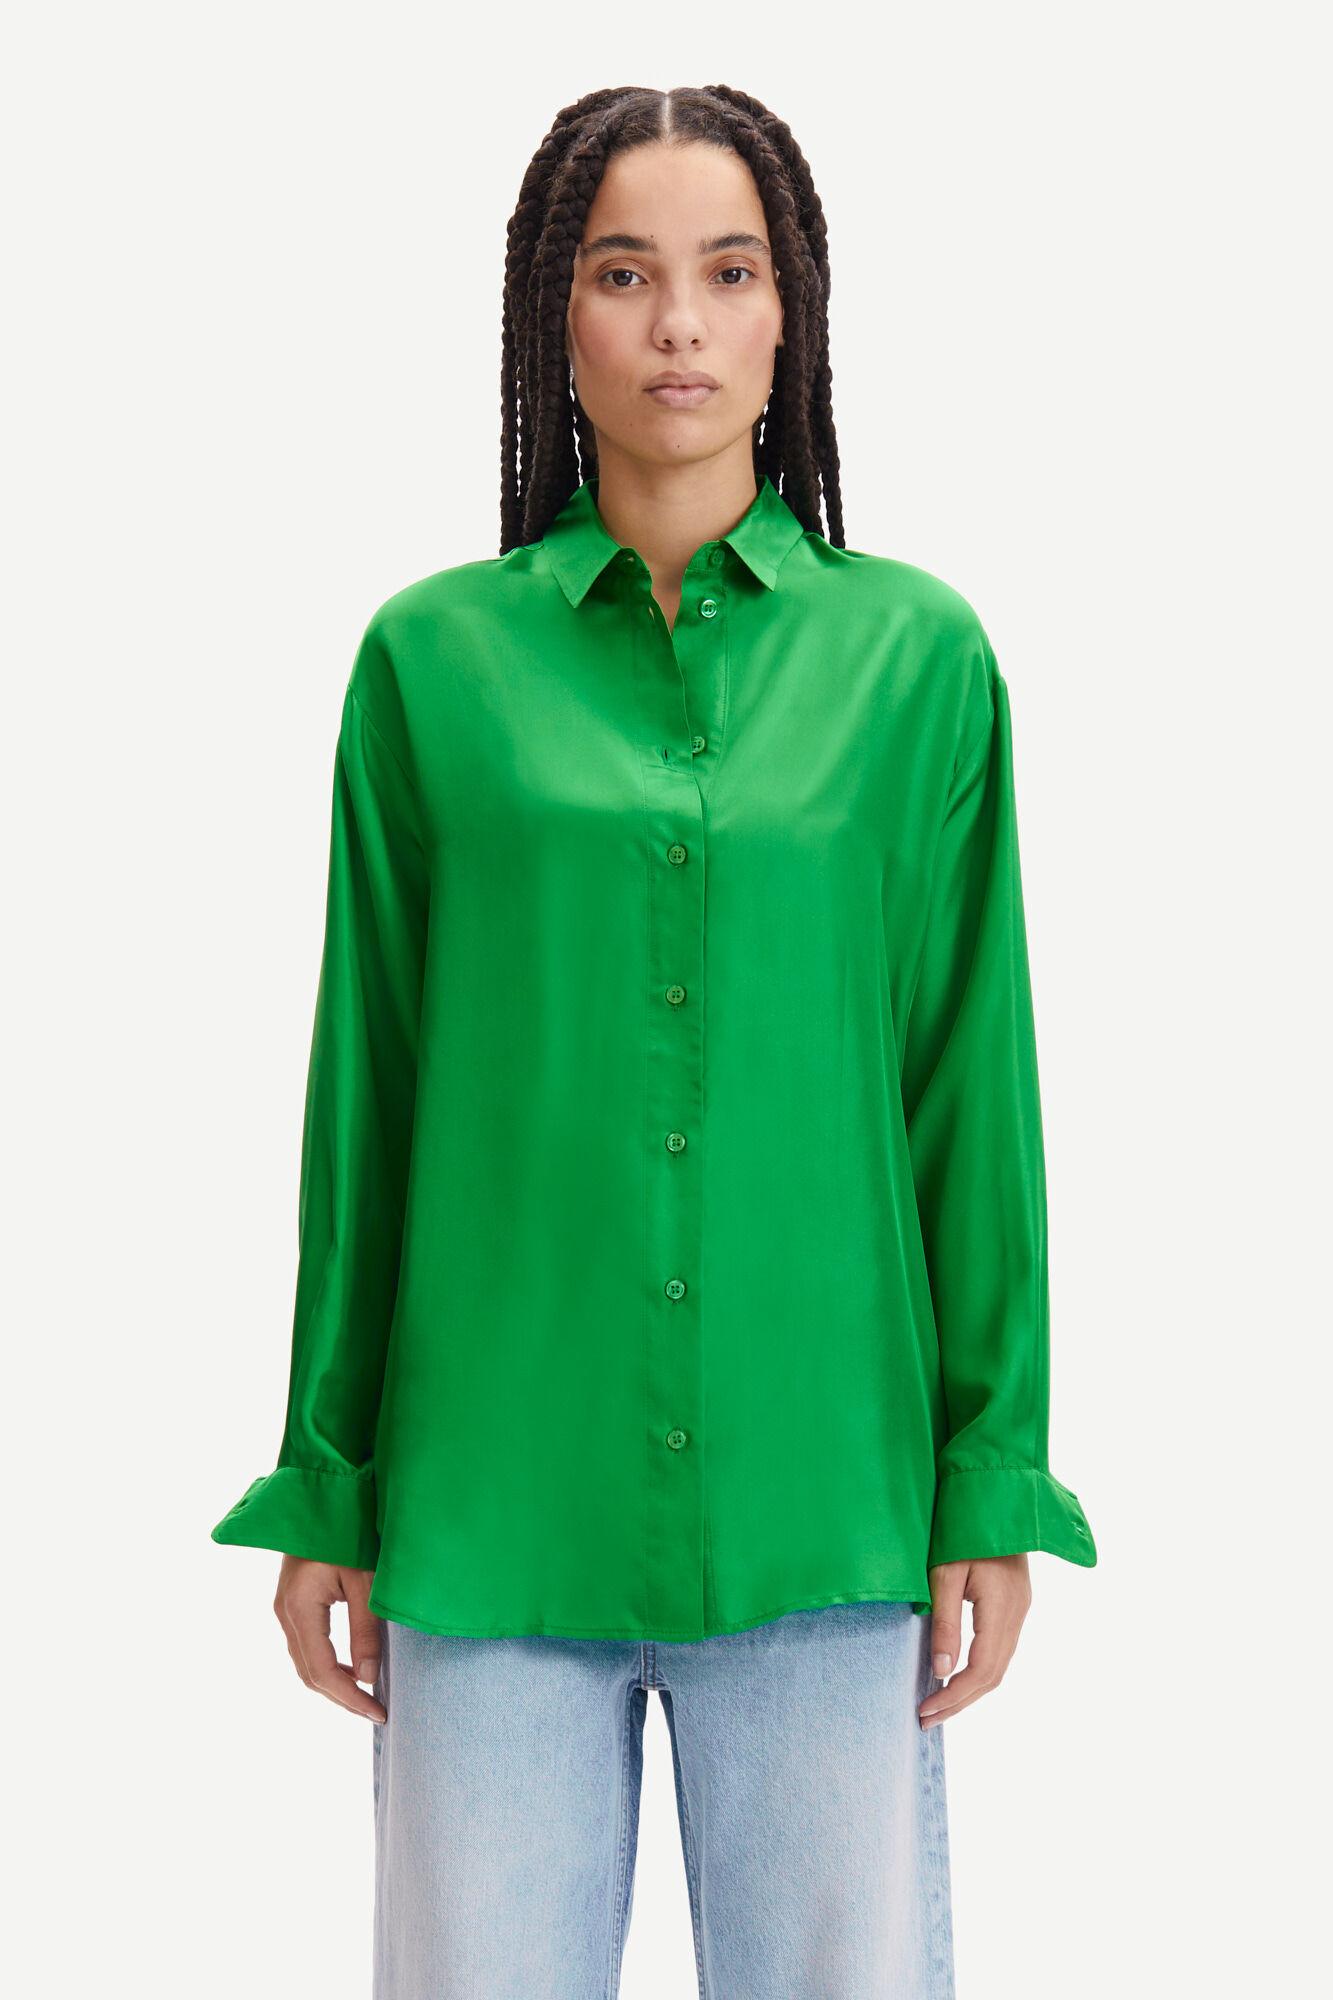 Sams\u00f8e & sams\u00f8e Slip-over blouse volledige print casual uitstraling Mode Blouses Slip-over blouses Samsøe & samsøe 